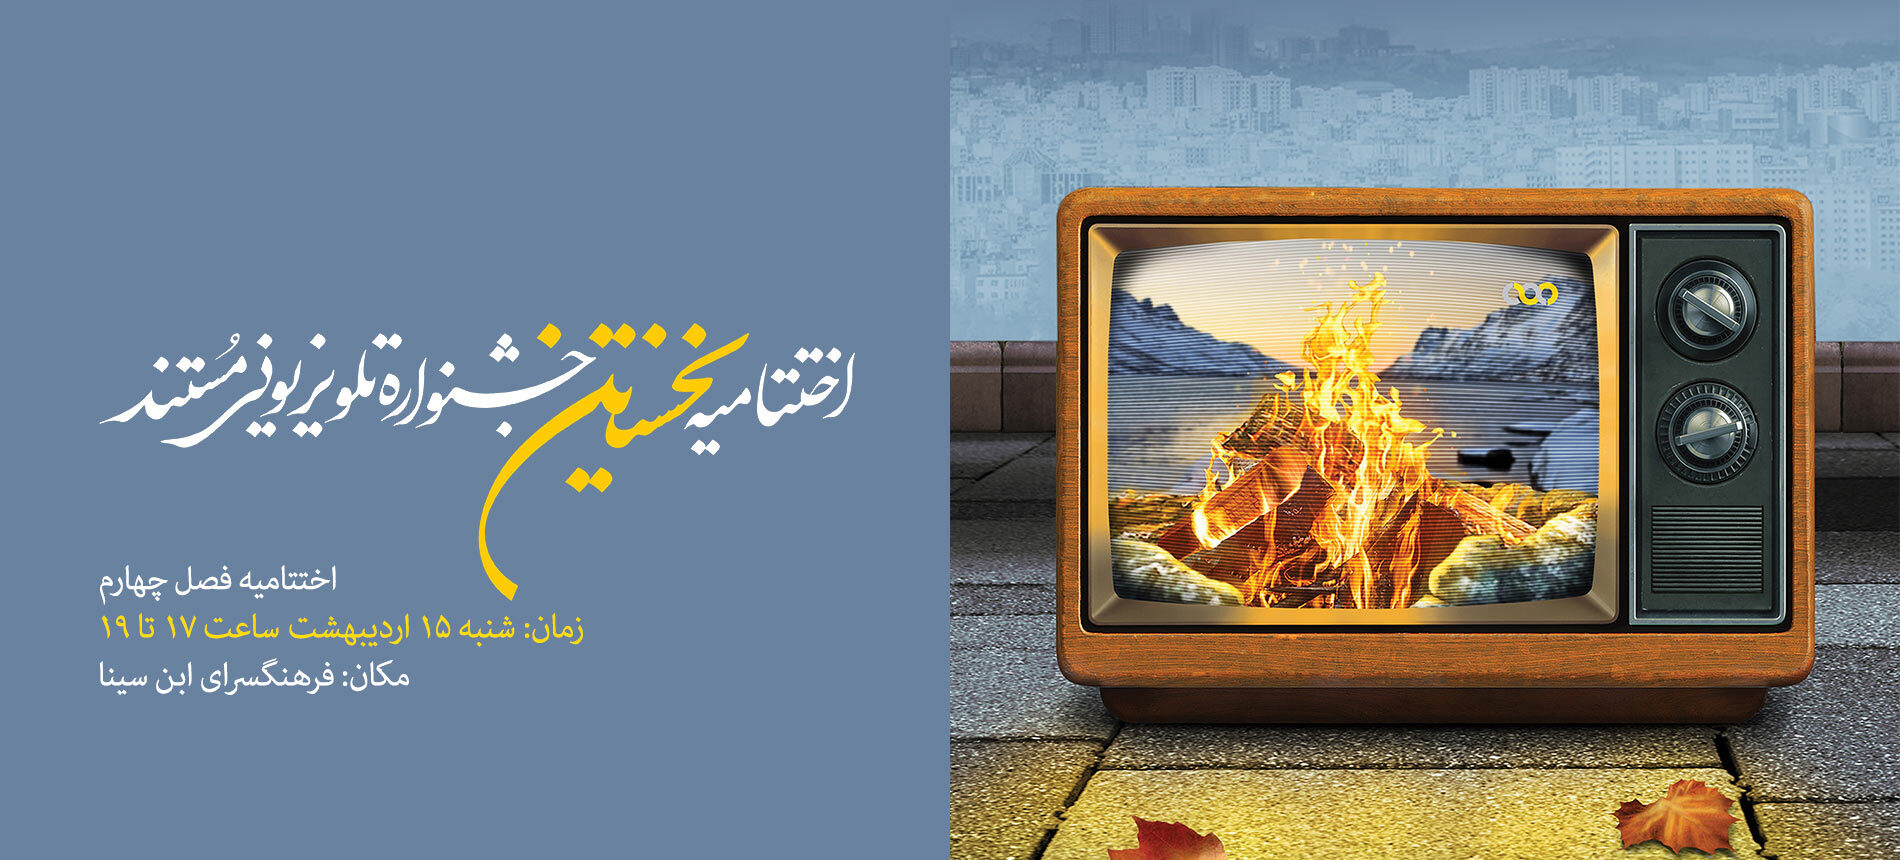 15 ام اردیبهشت، اختتامیه فصل چهارم و جشن یک سالگی جشنواره تلویزیونی مستند